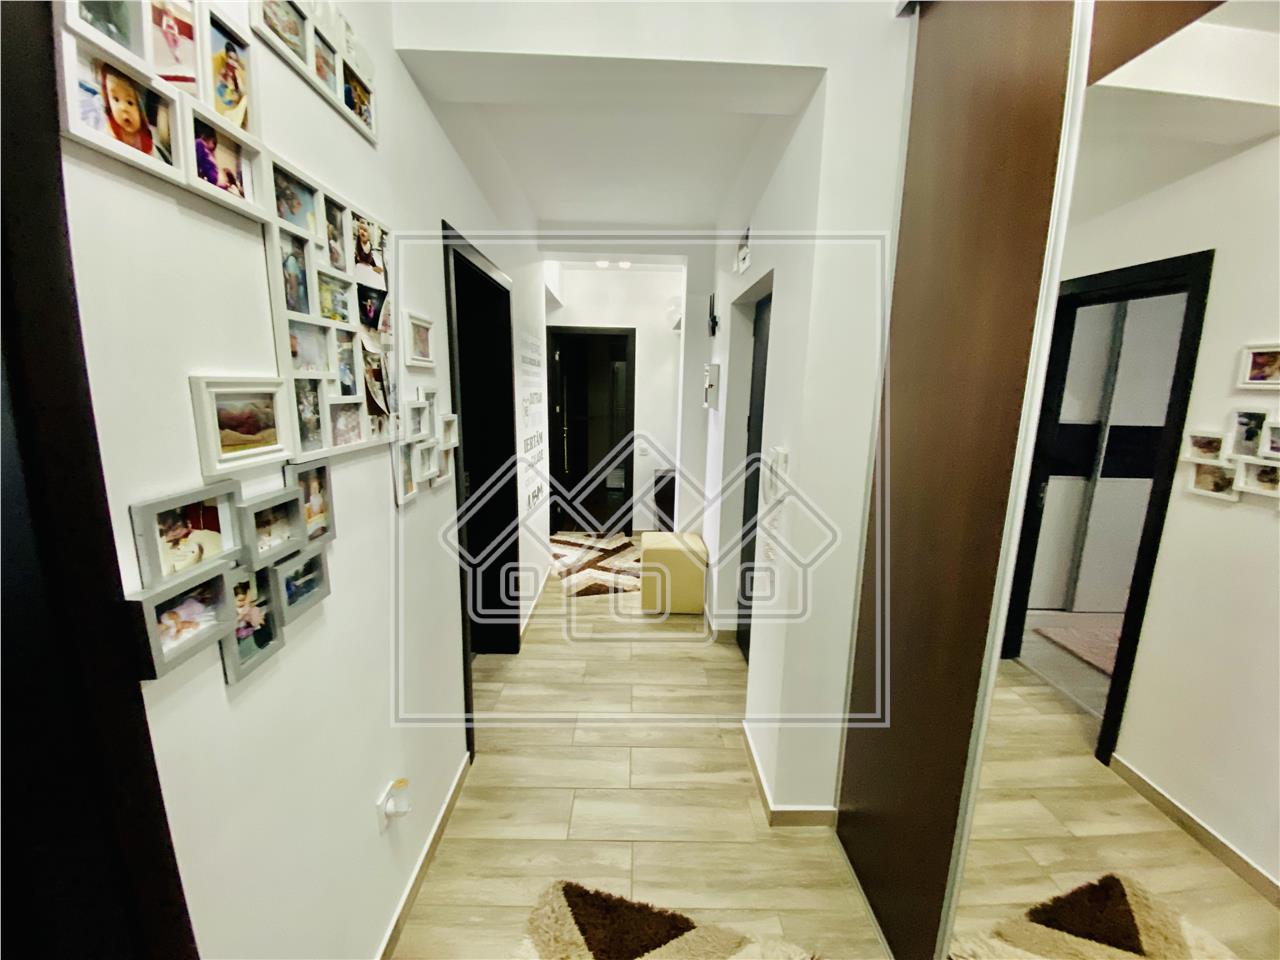 Wohnung zu verkaufen in Sibiu - 3 Zimmer, Balkon und 2 Badezimmer - Se